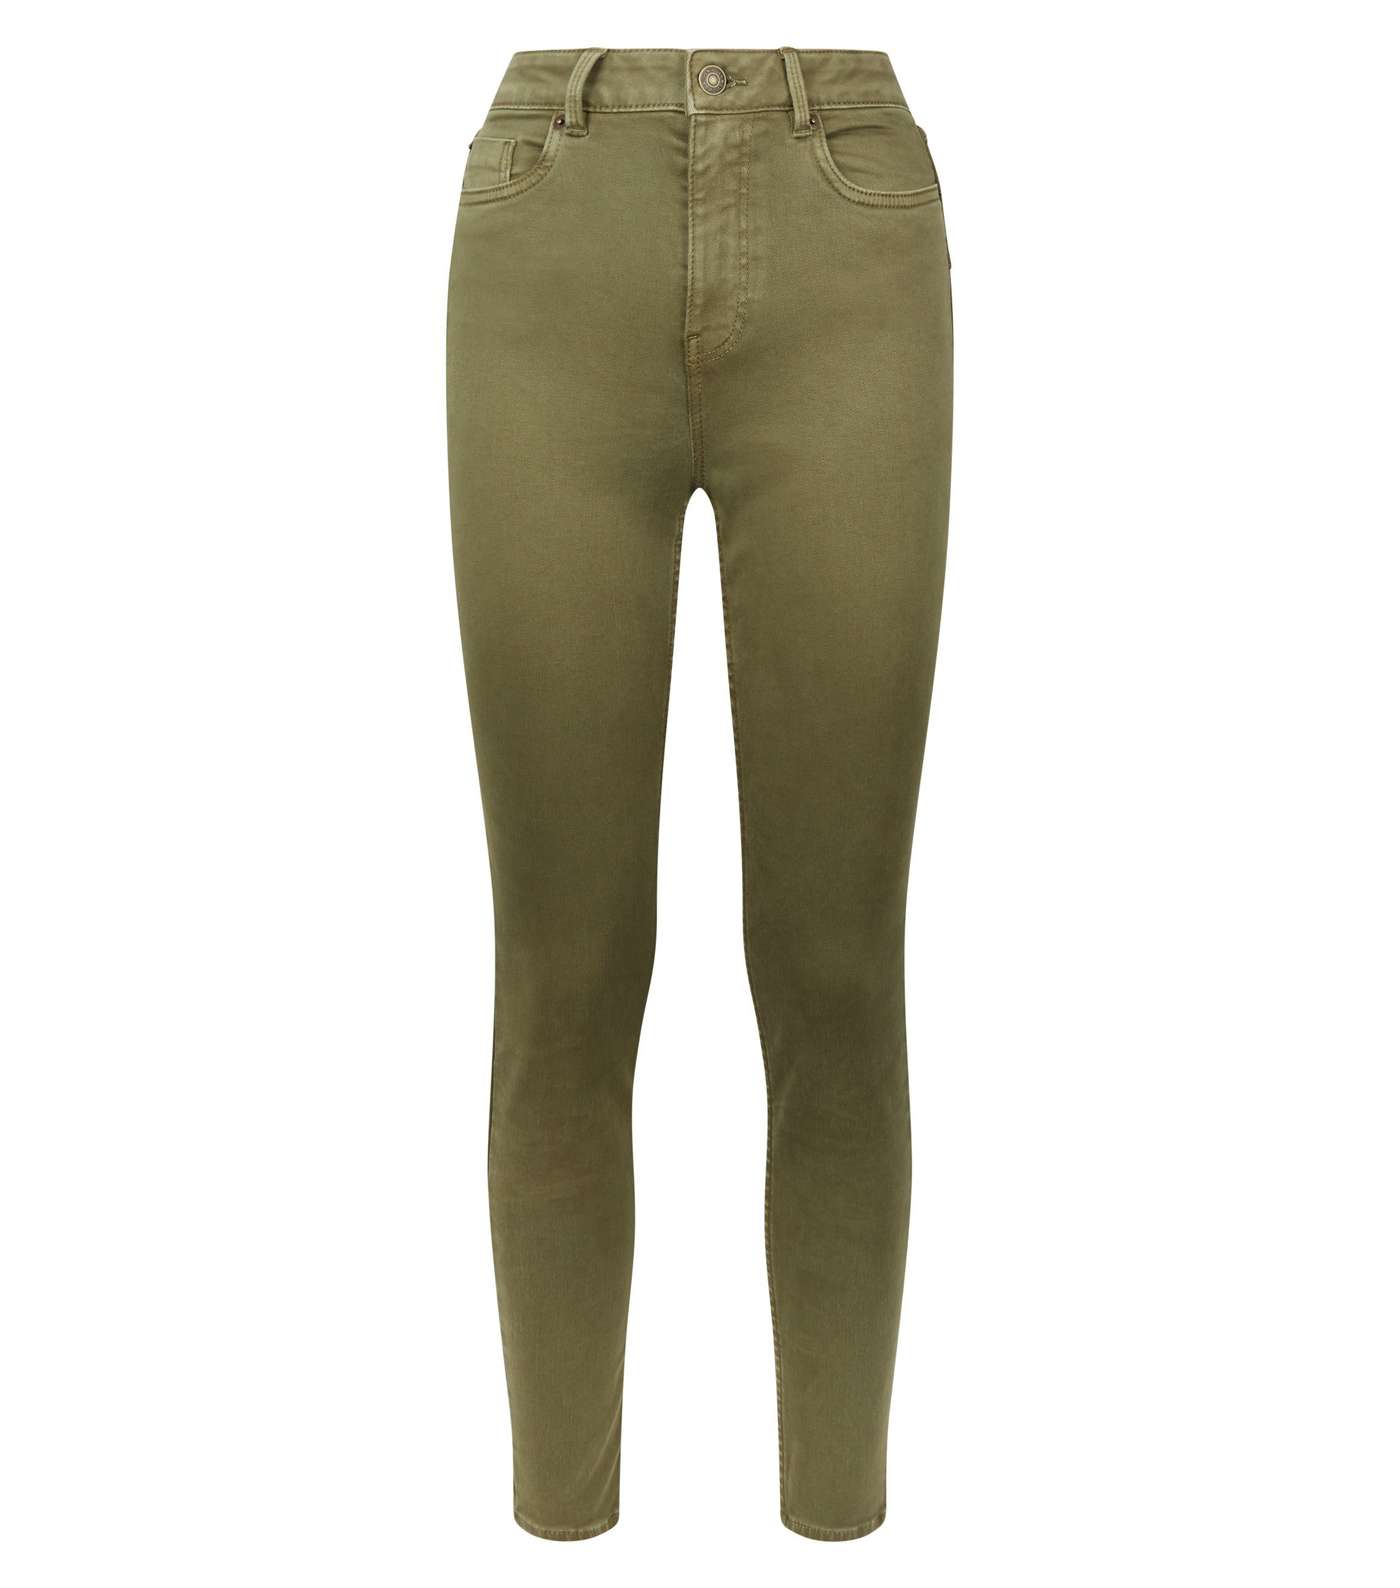 Khaki High Waist 'Lift & Shape' Skinny Jeans Image 4